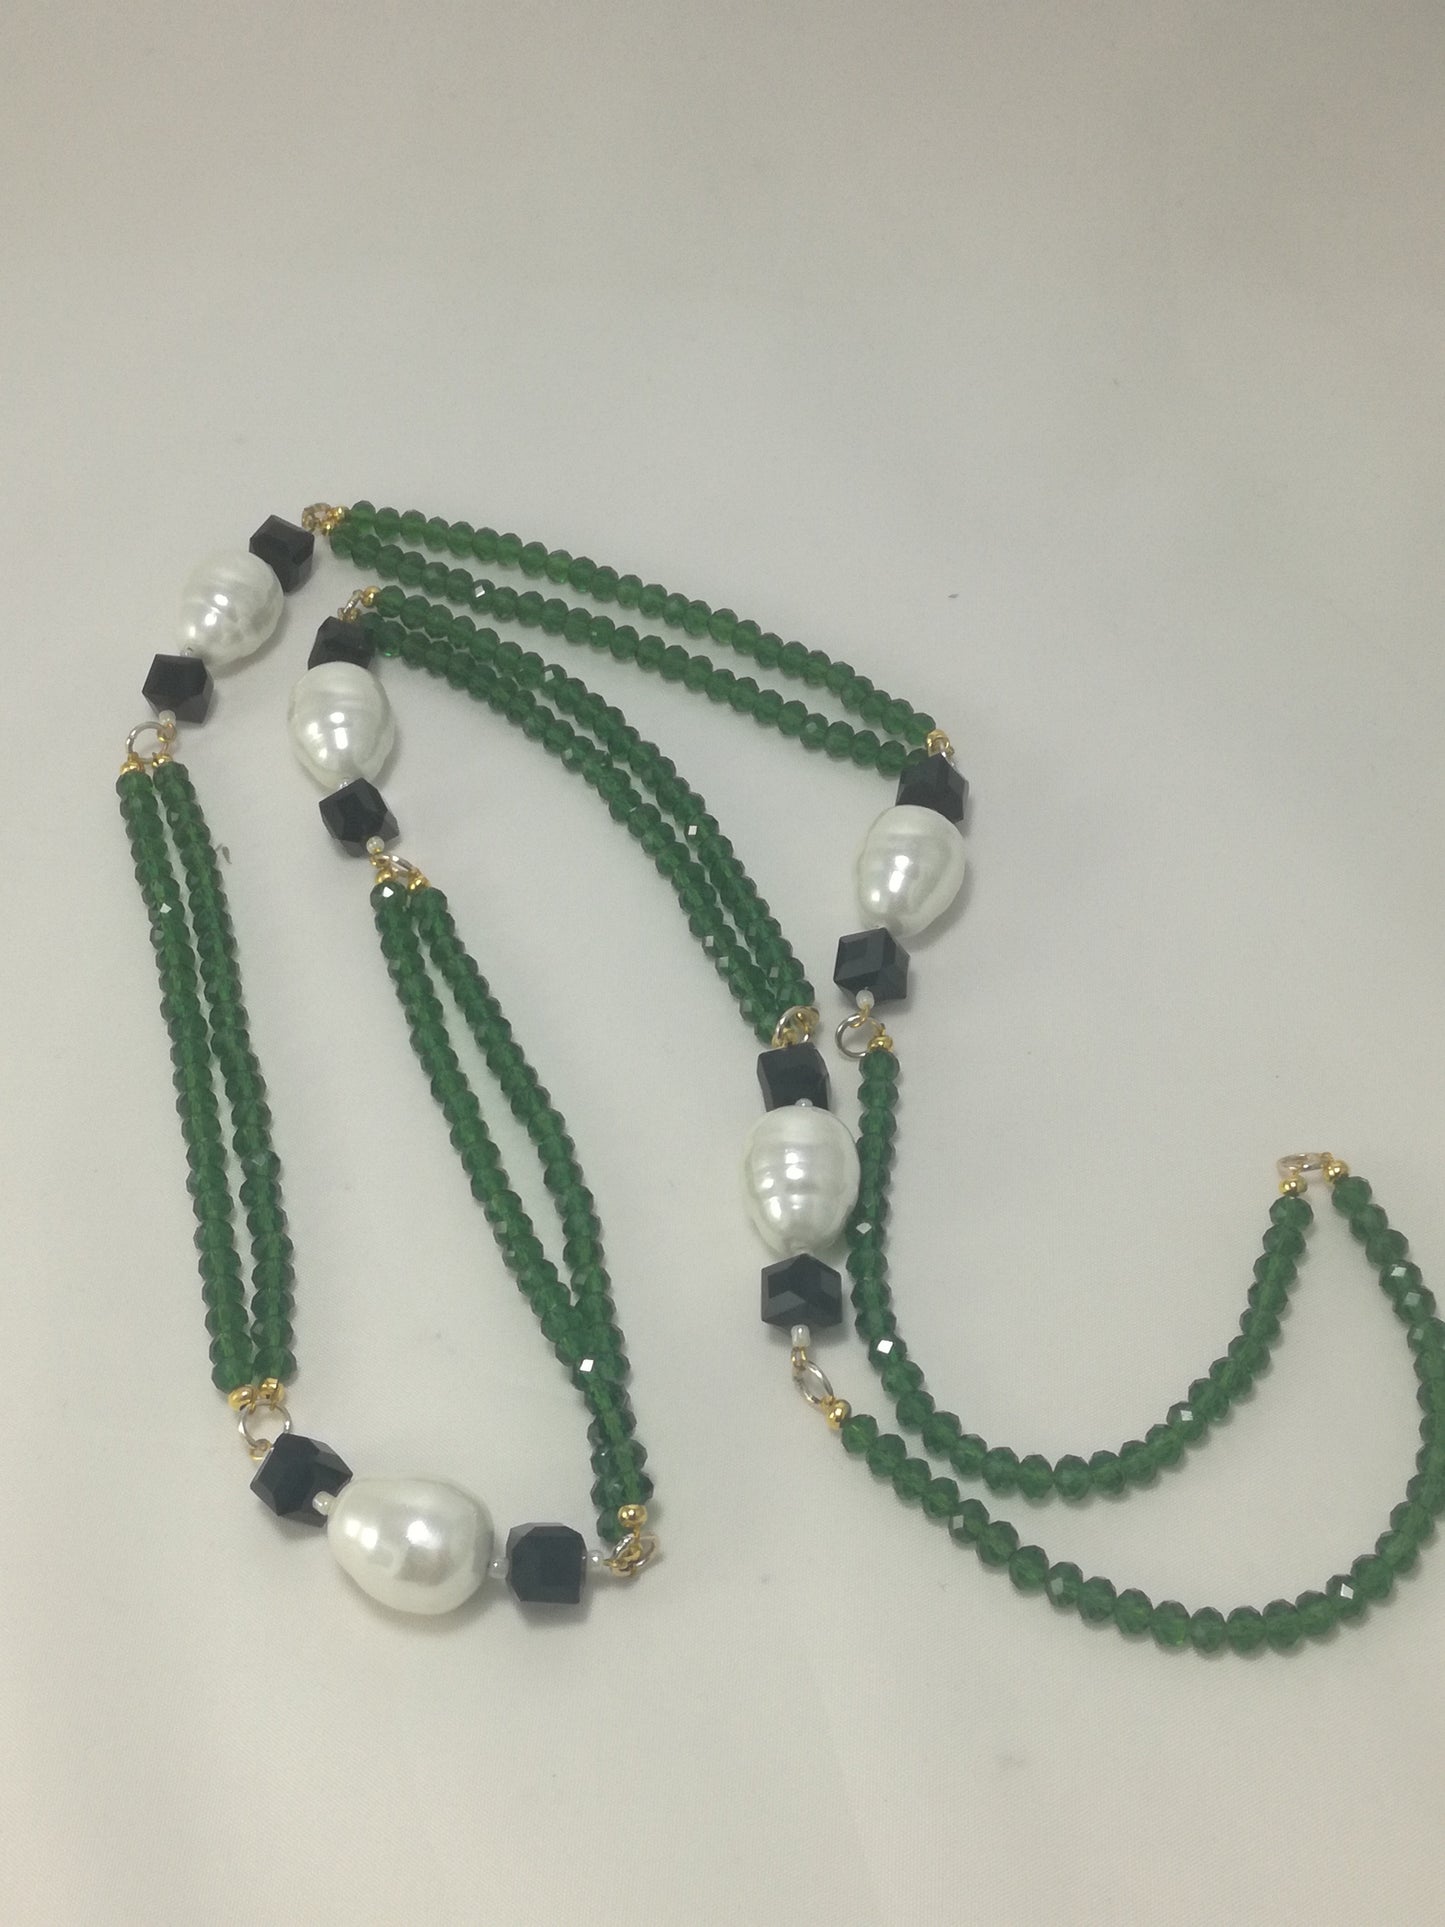 Collana ZELDA .071 cristalli verdi, perle barocche e cubetti cristallo nero.